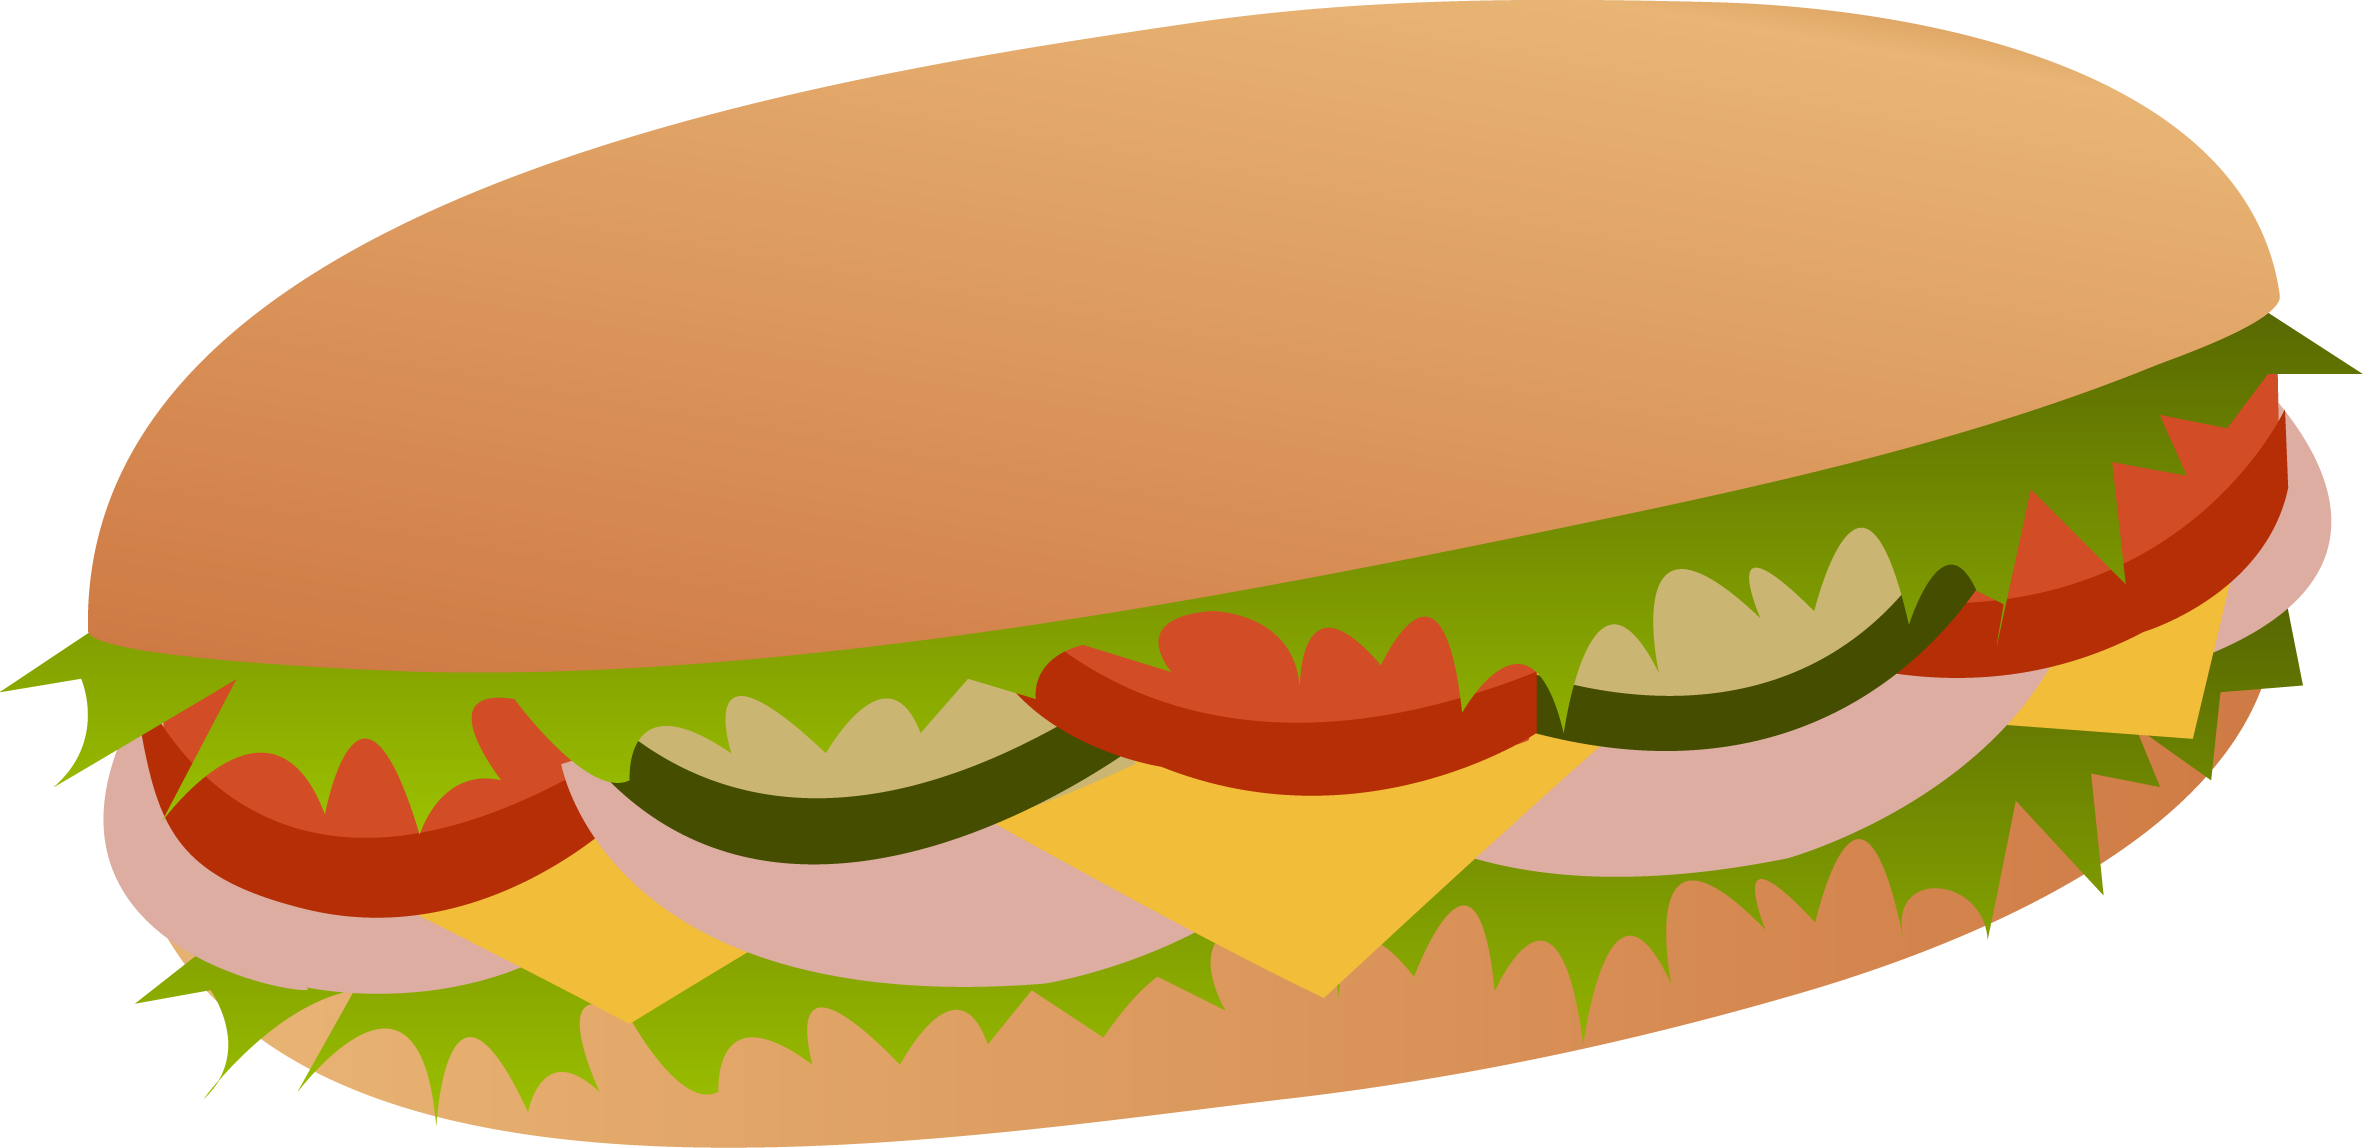 Deli sandwich clipart